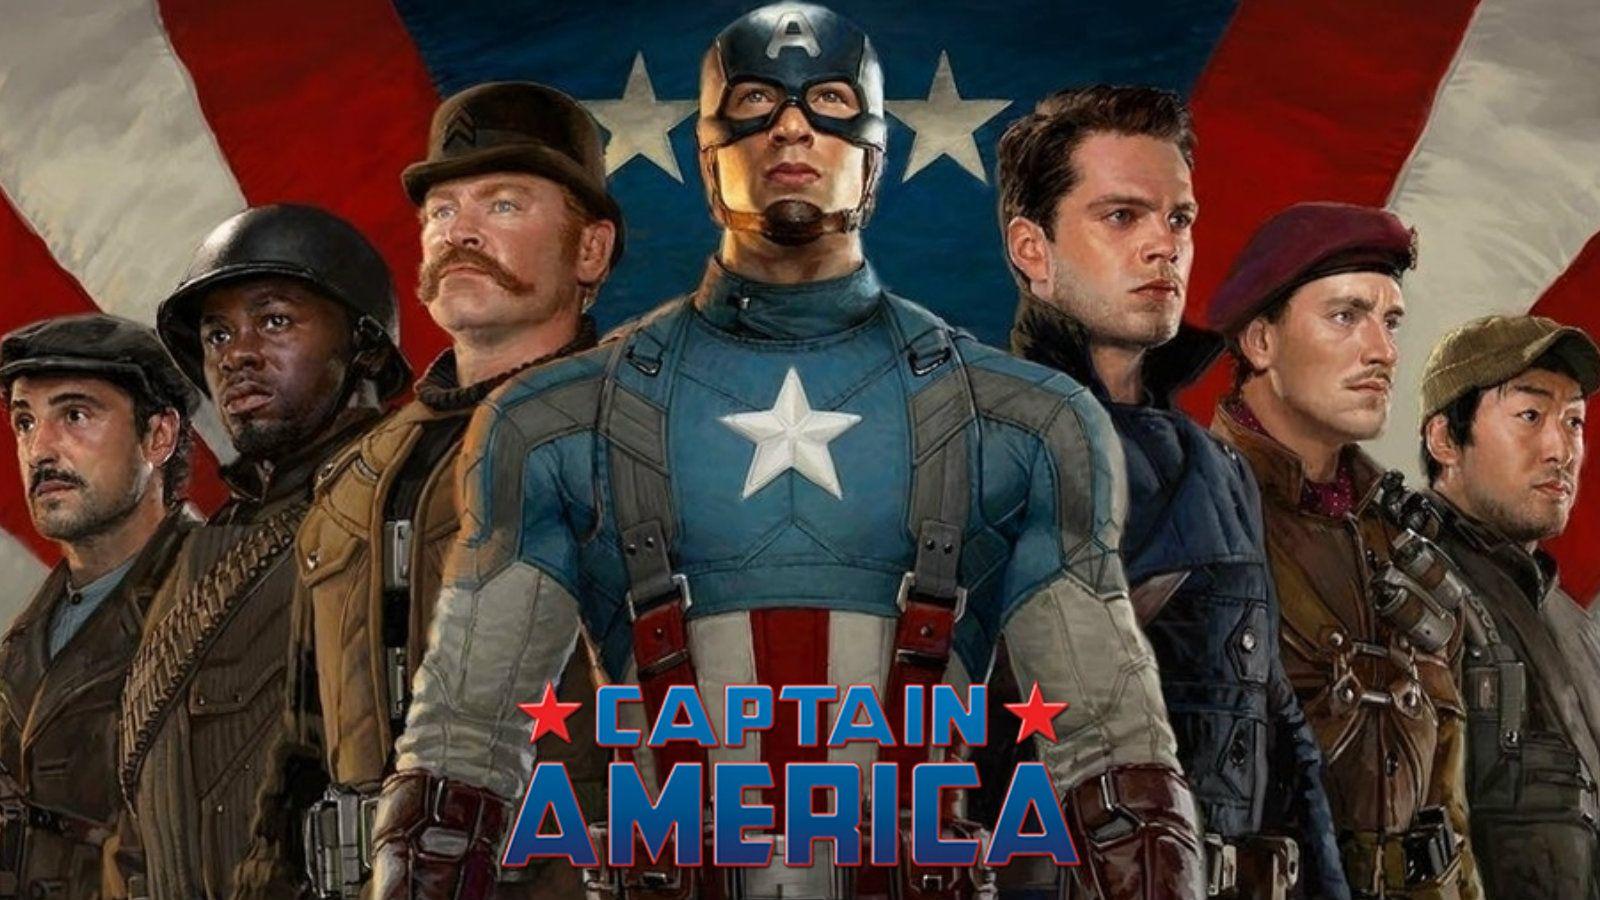 Captain America: The First Avenger Wallpaper Free